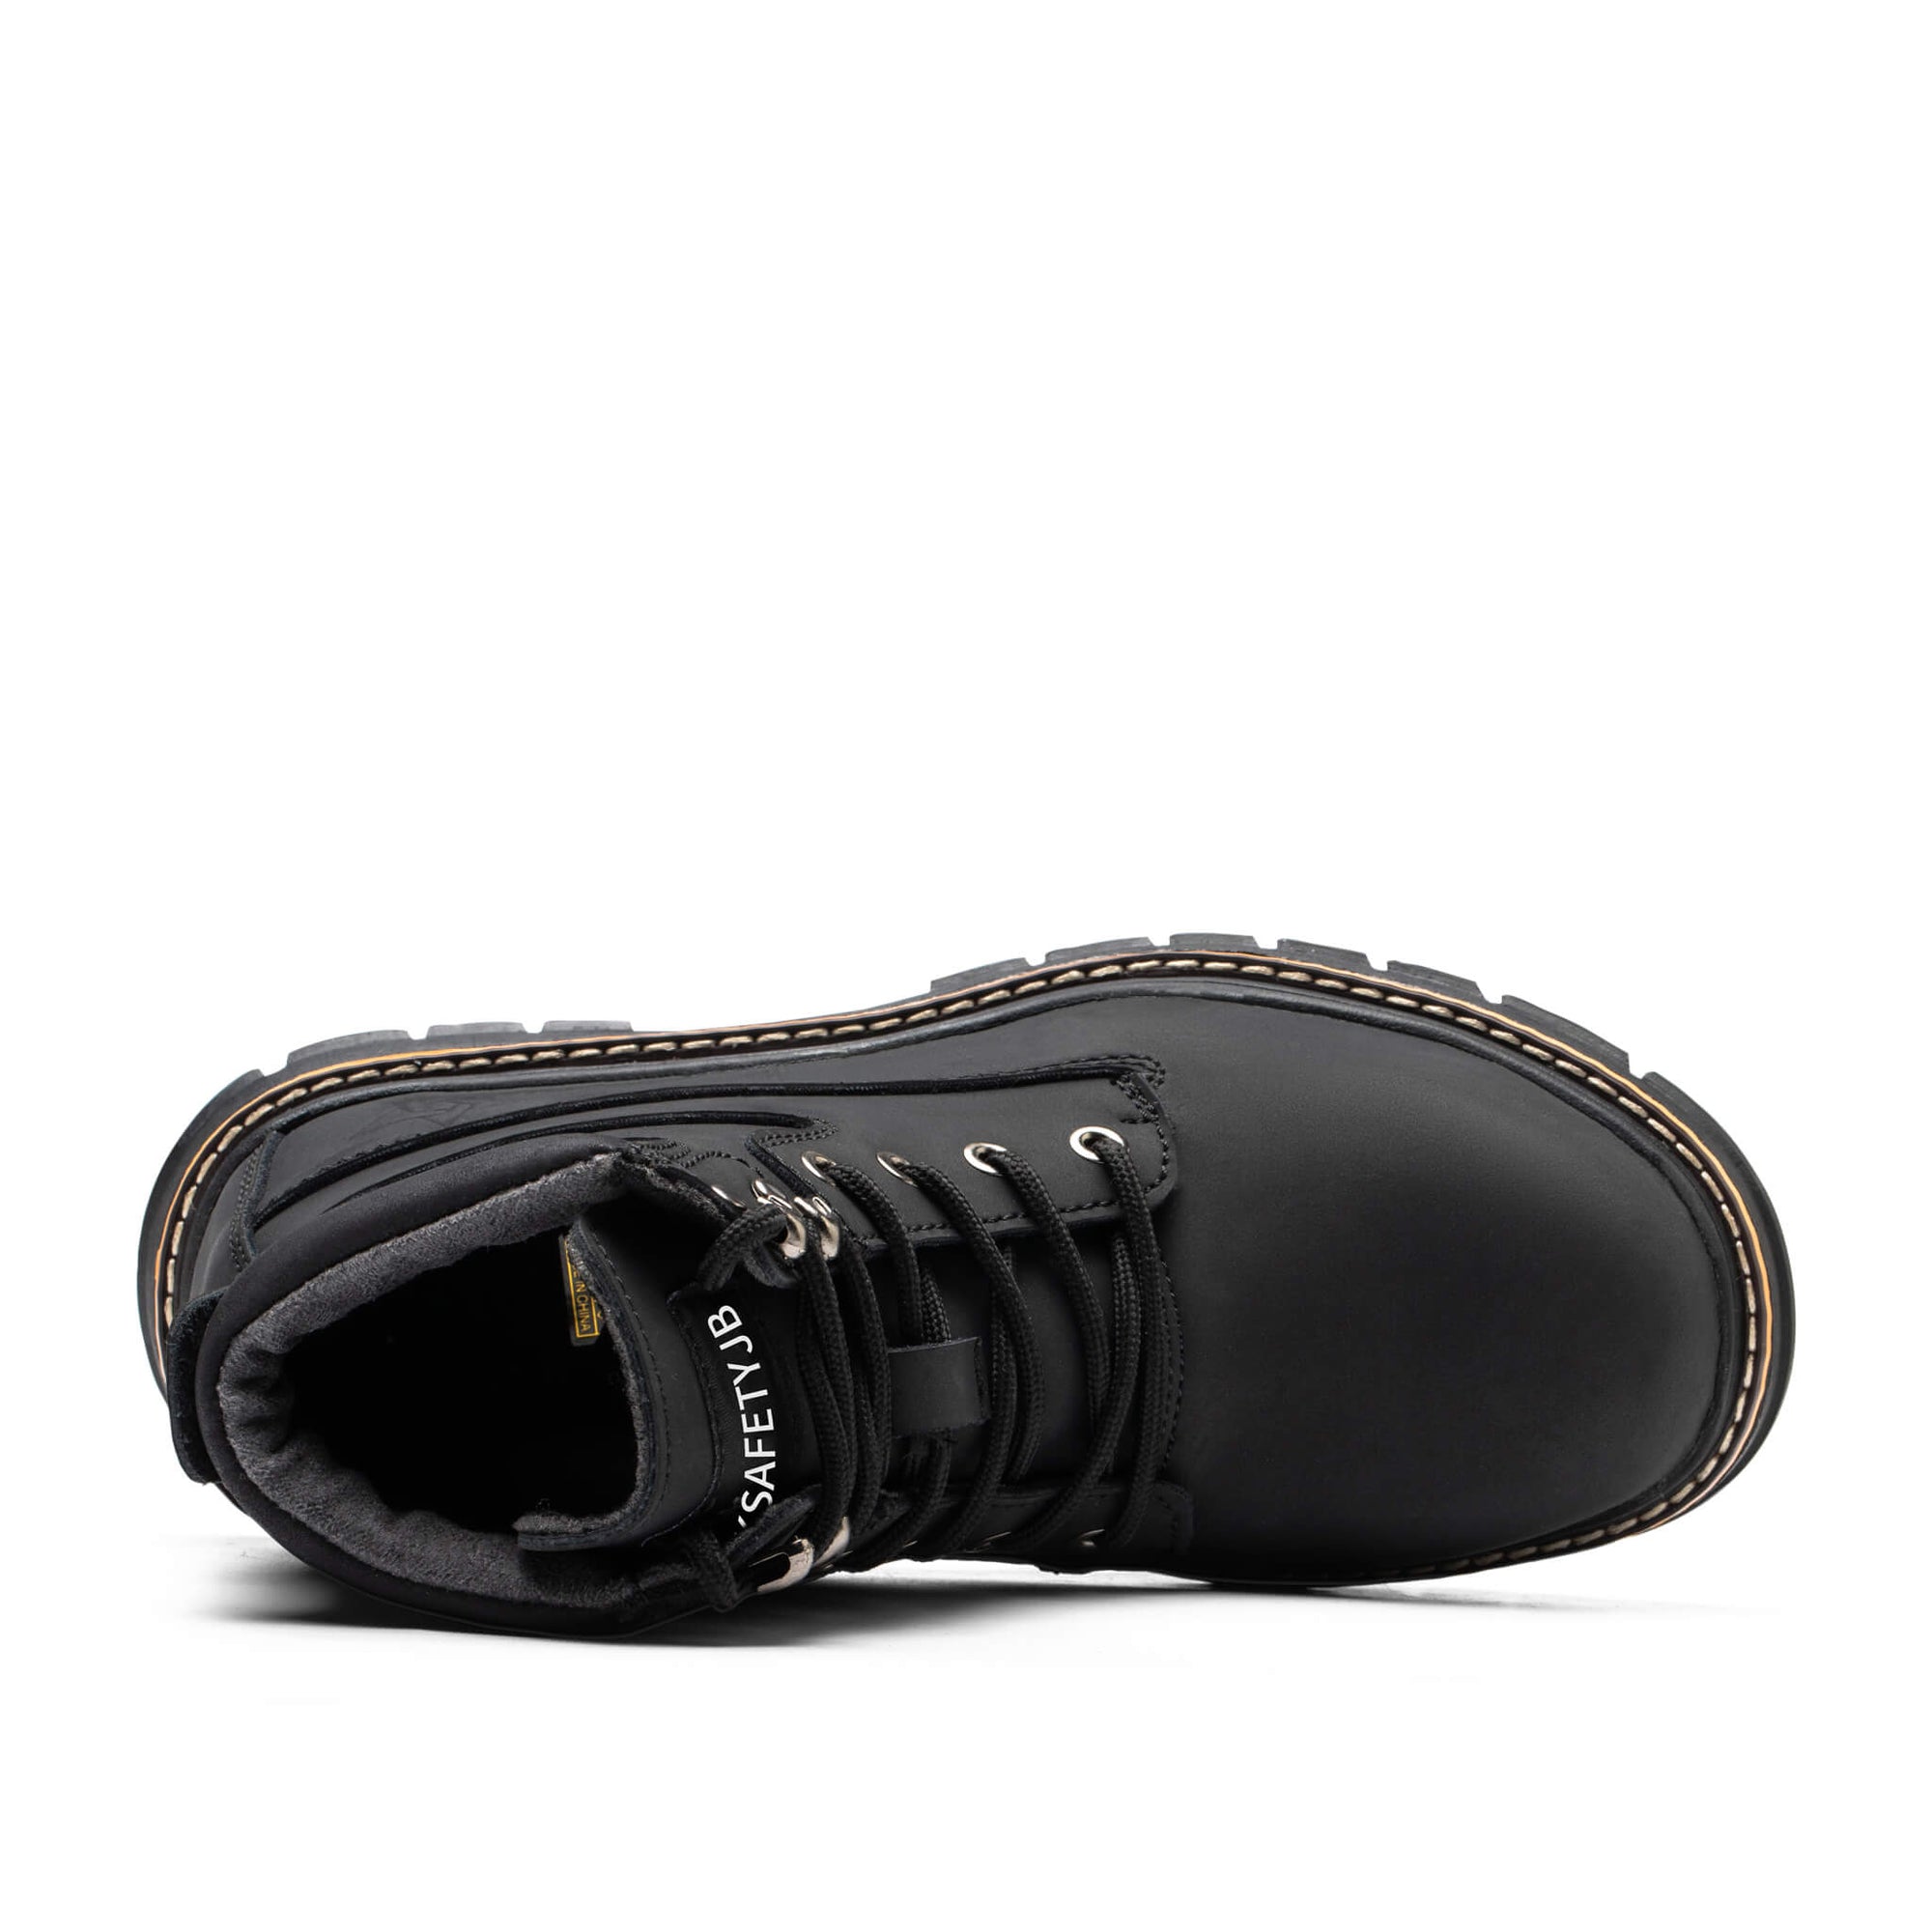 Hype Black 2.0 - Indestructible Shoes